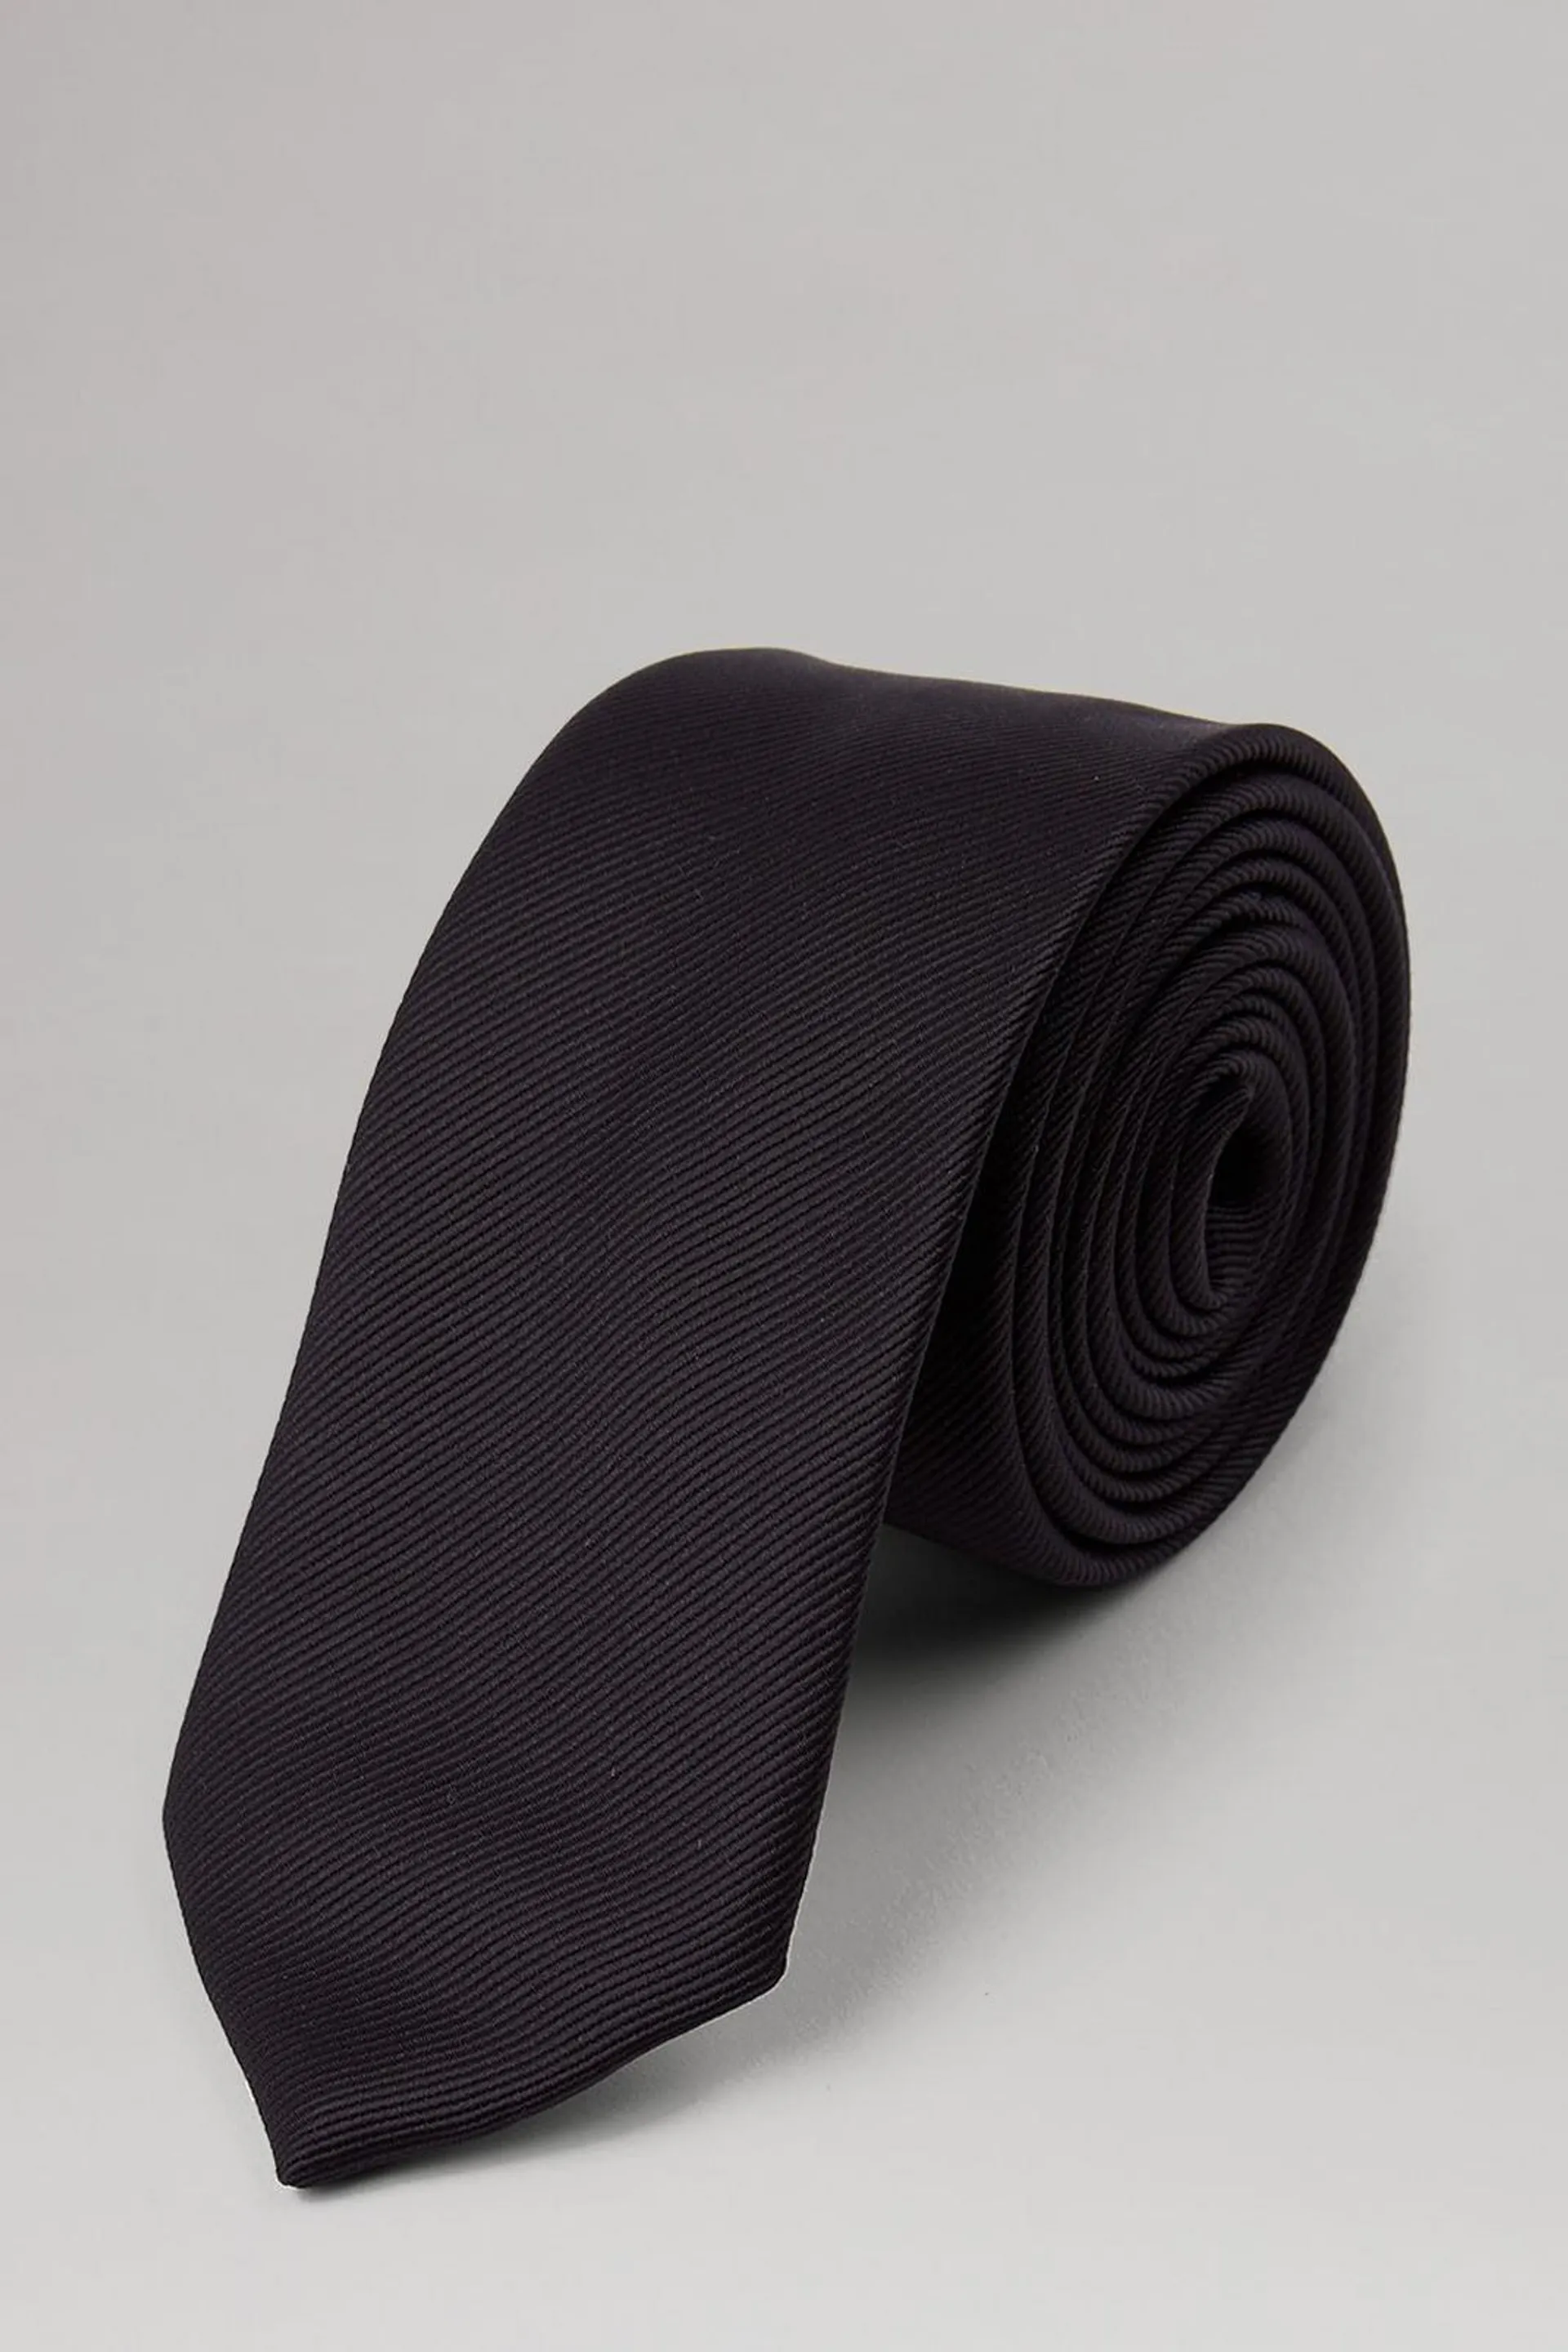 Slim Black Tie